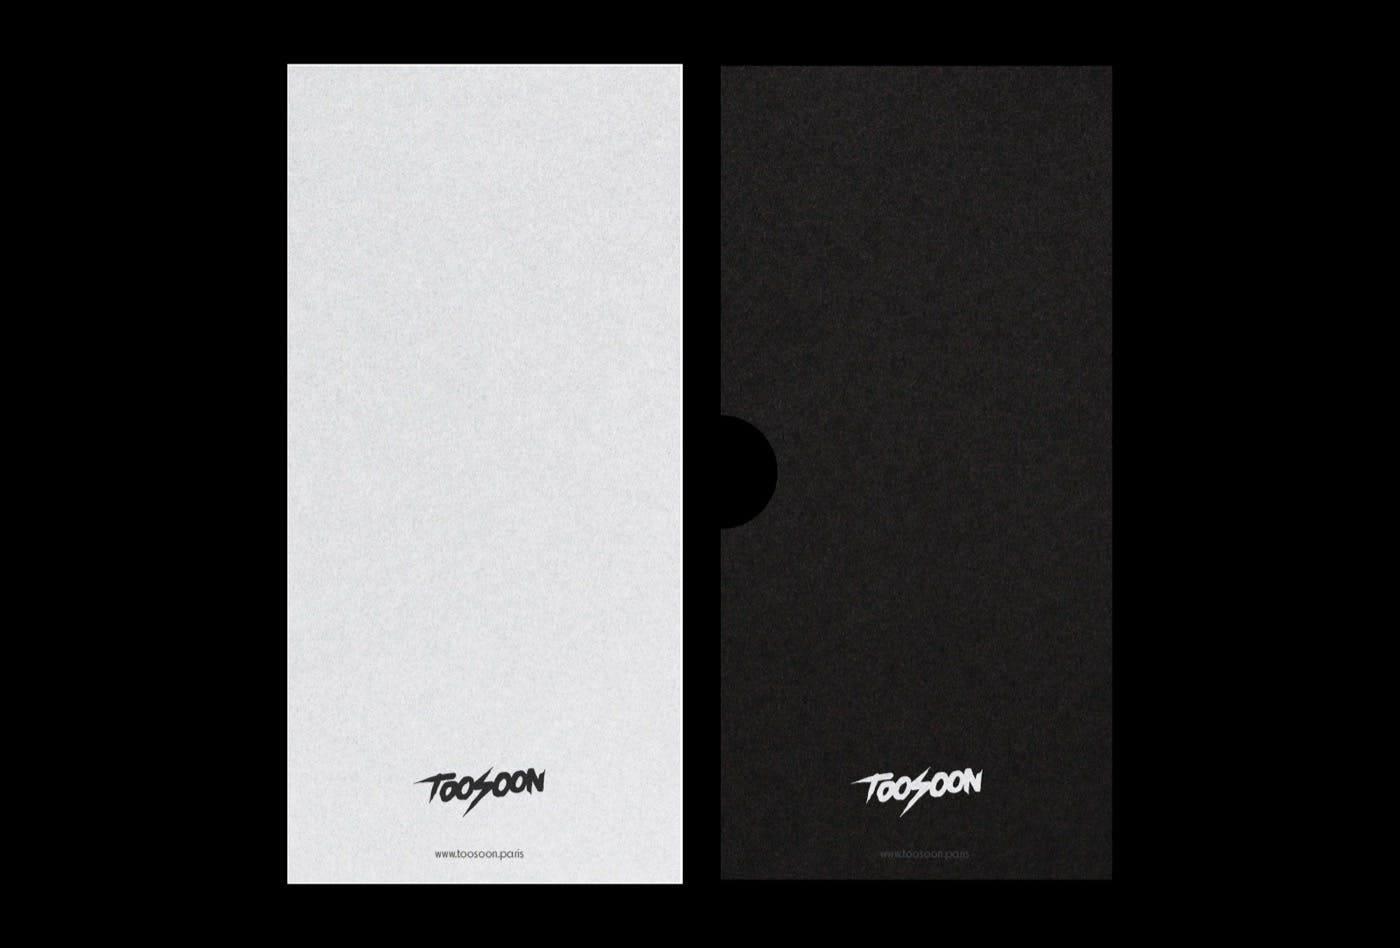 TOOSOON - Branding Print
